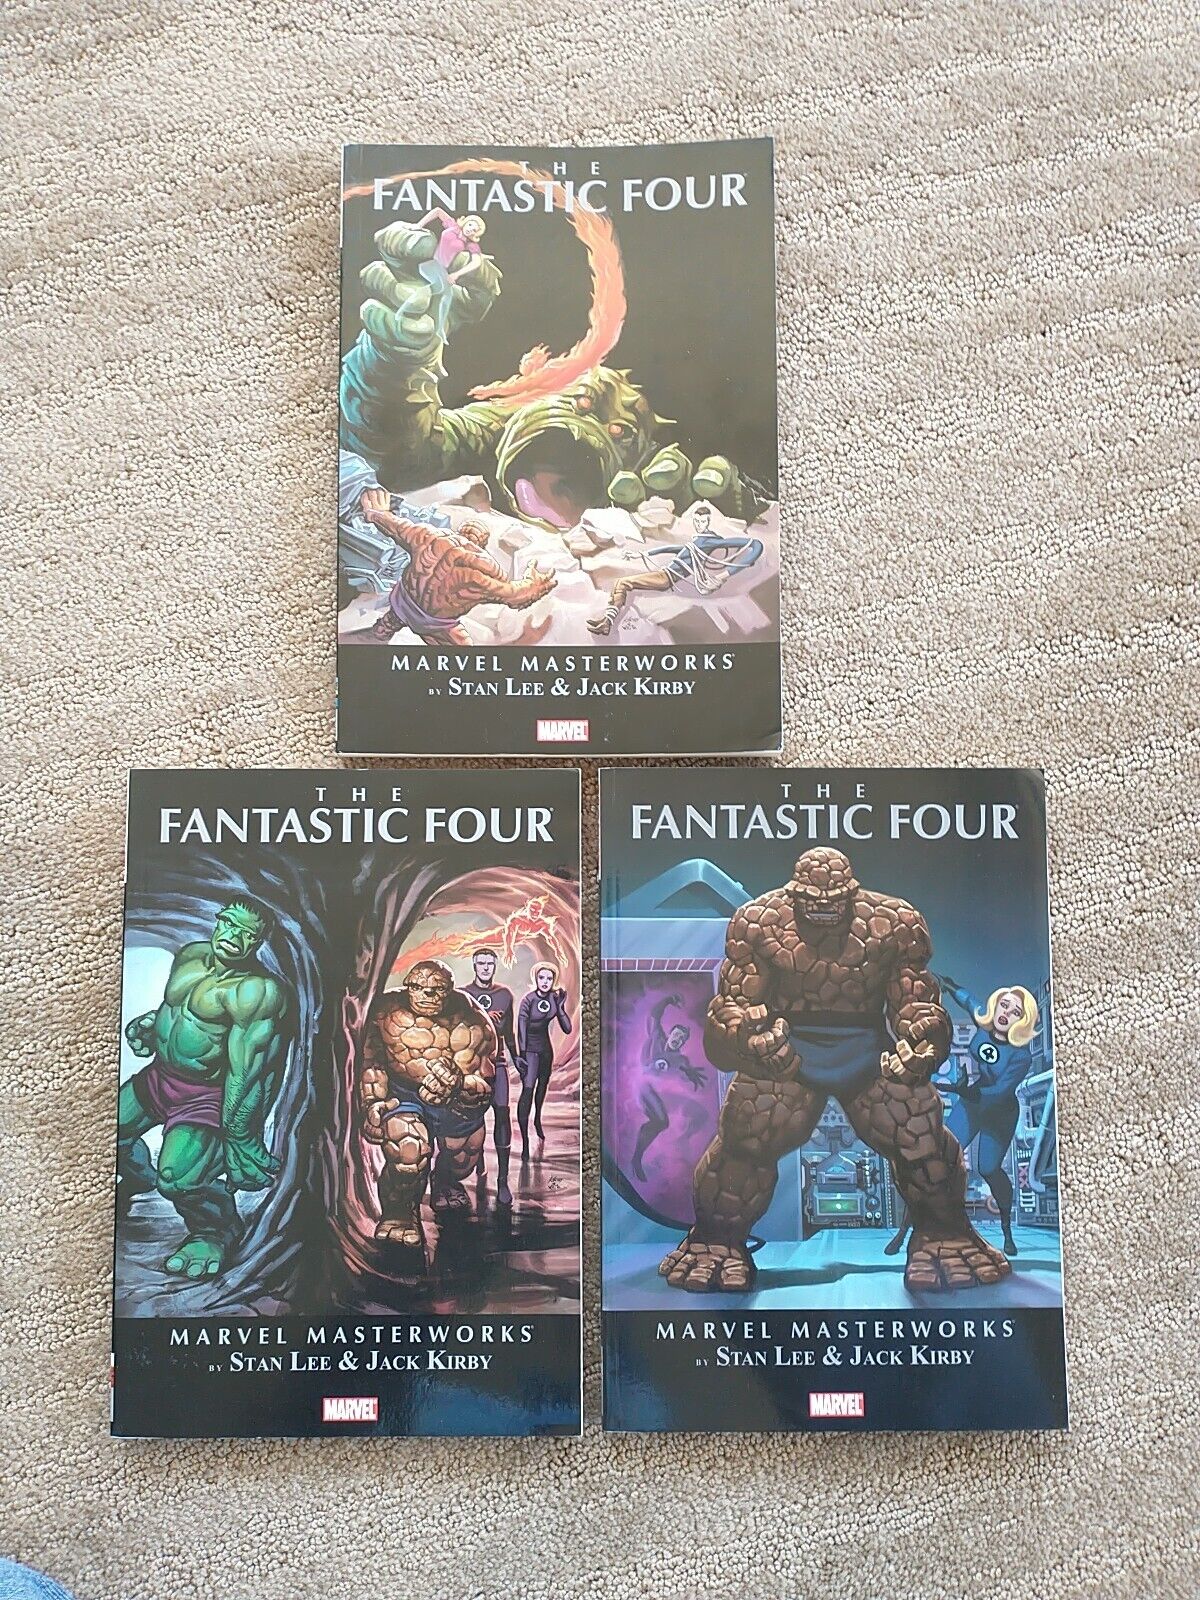 Fantastic Four, Vol. 1, 2, 6 -Marvel Masterworks by Stan Lee. 1st prints 2009-11